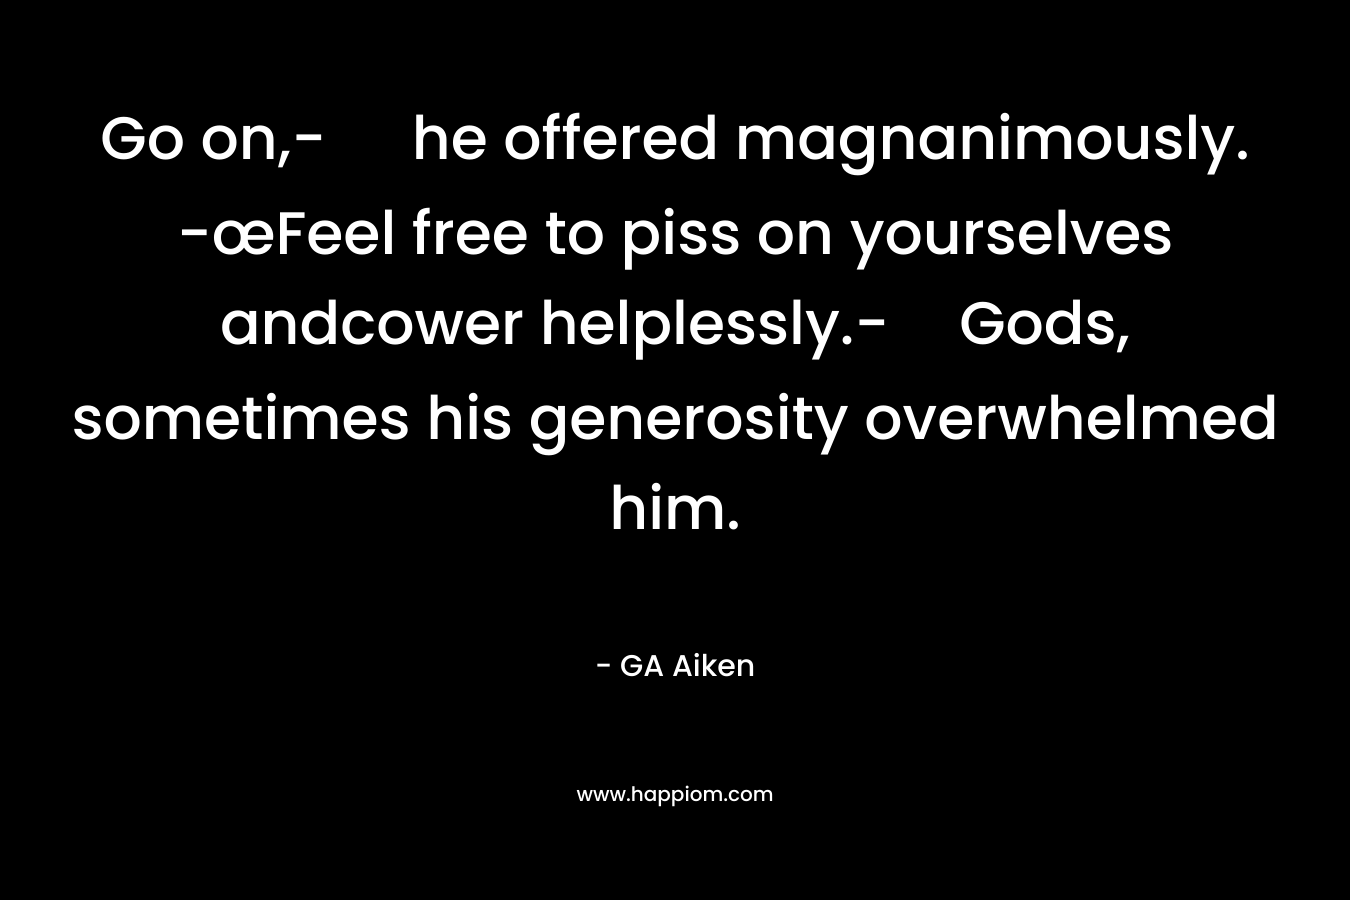 Go on,- he offered magnanimously. -œFeel free to piss on yourselves andcower helplessly.-Gods, sometimes his generosity overwhelmed him. – GA Aiken